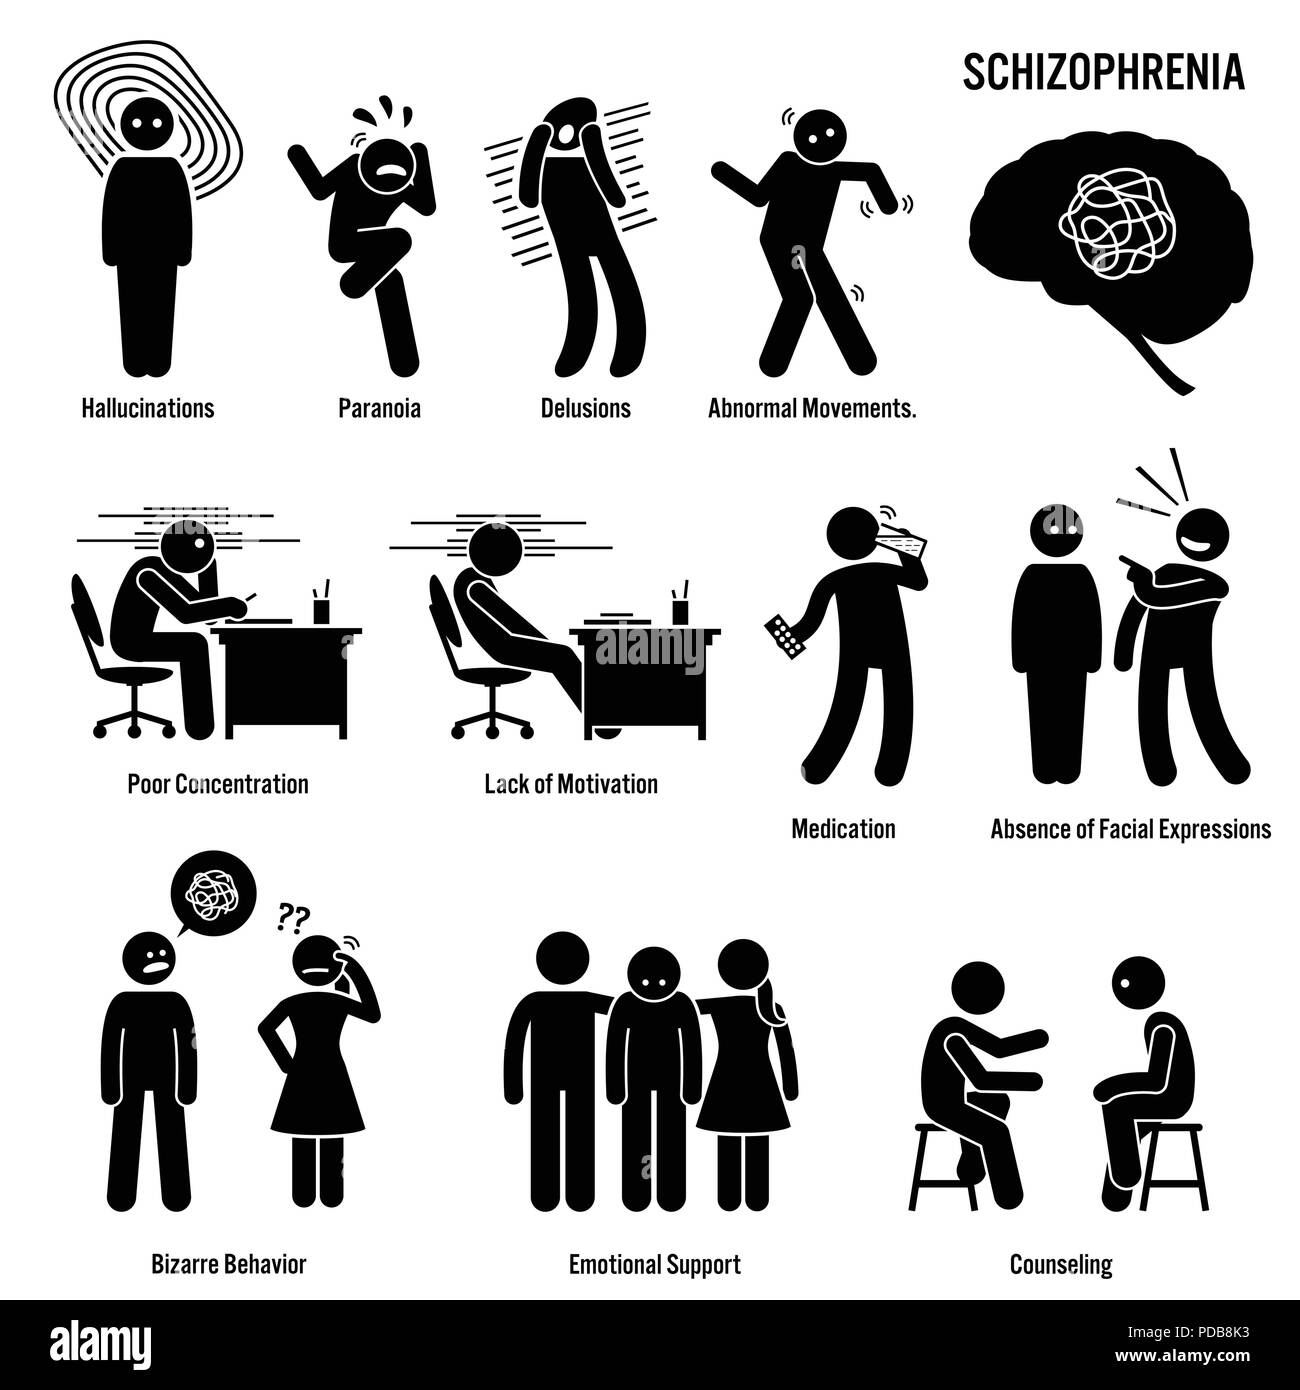 Schizophrenie chronische psychische Erkrankung, Symbole. Piktogramme zeigen Anzeichen, Symptome und Behandlung der Schizophrenie psychische Erkrankung, Krankheit. Stock Vektor